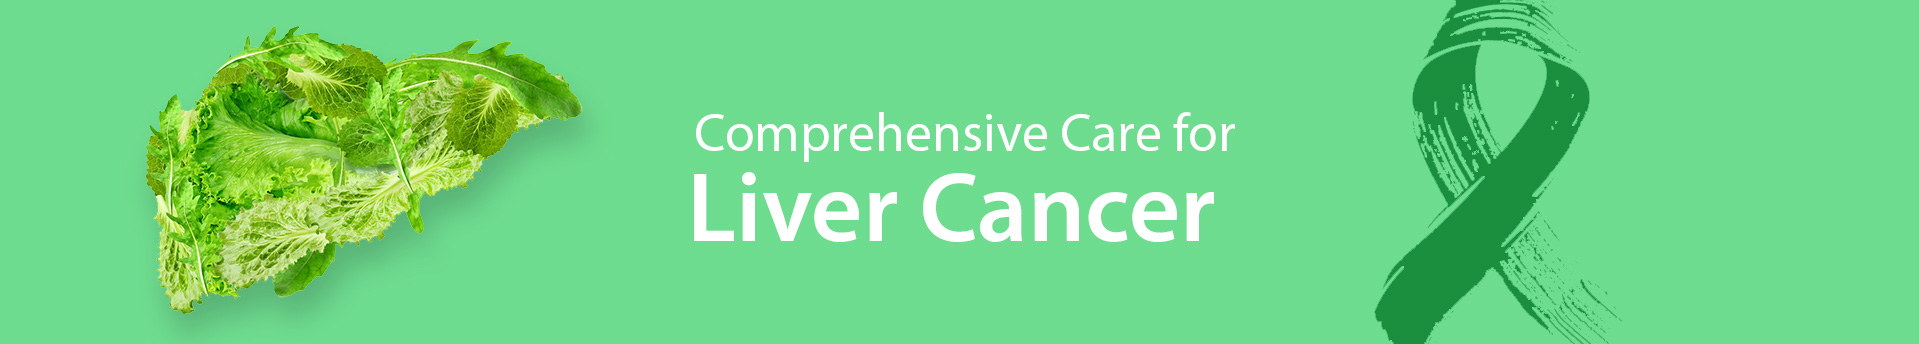 MSH Website liver cancer